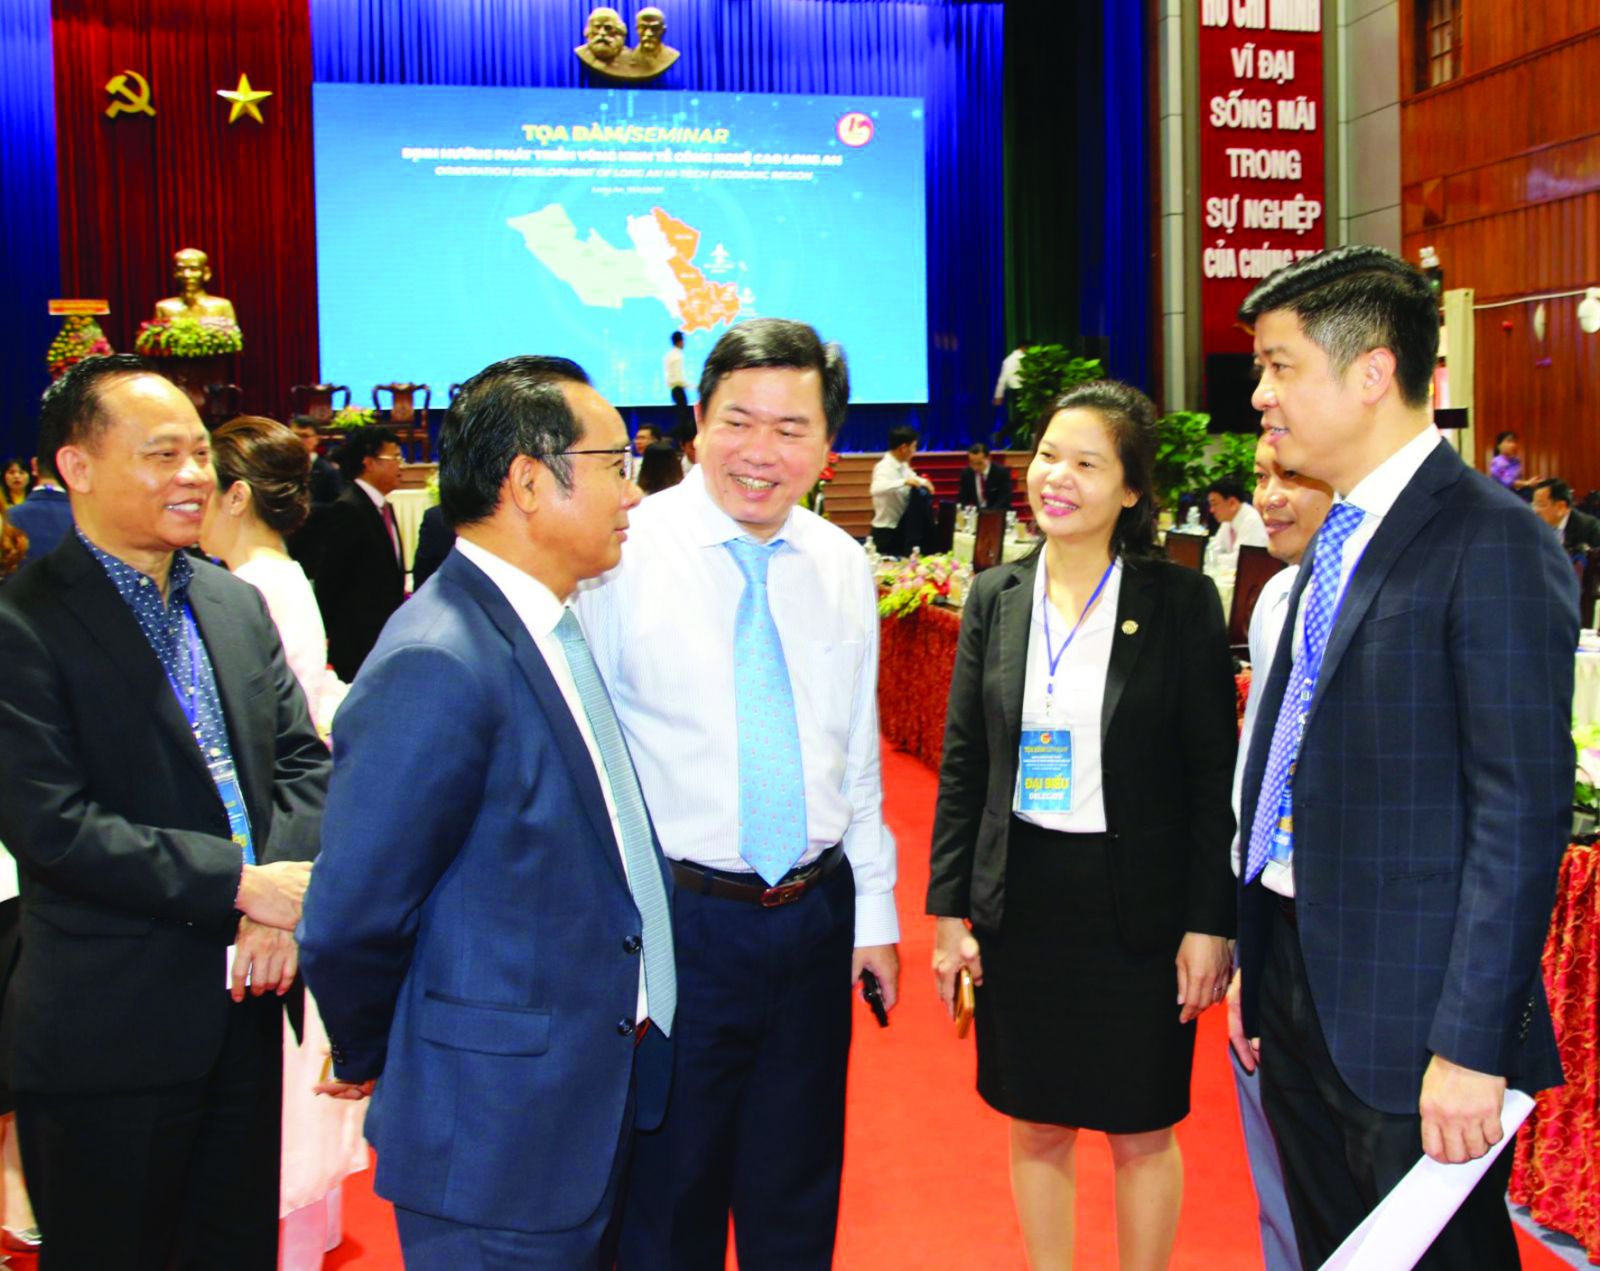  Các đại biểu trao đổi thông tin tại Tọa đàm Định hướng phát triển vùng kinh tế công nghệ cao Long An.